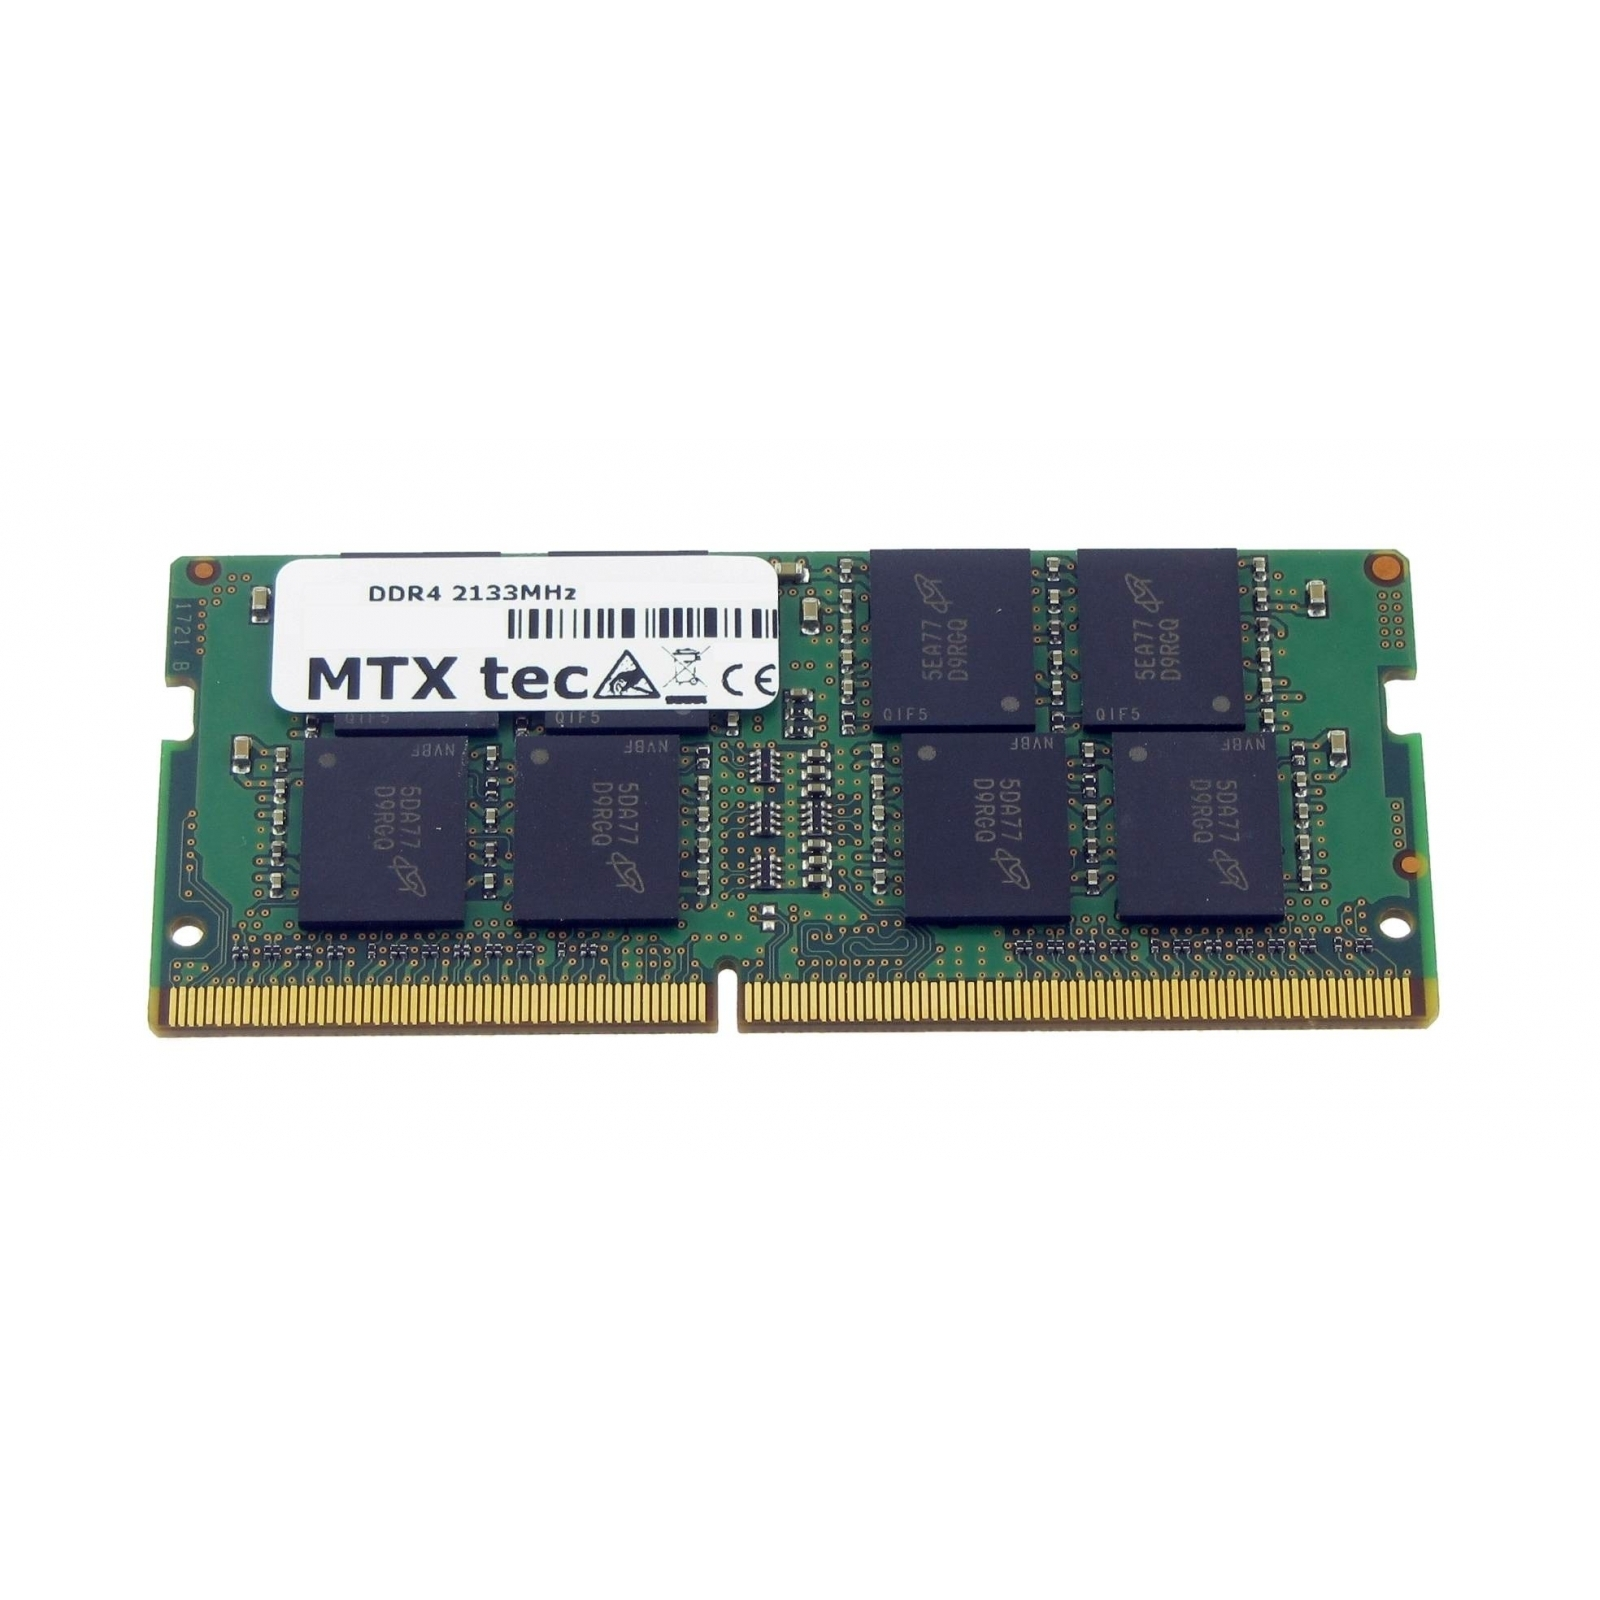 für LifeBook 16 GB MTXTEC DDR4 FUJITSU 16 RAM E756 Arbeitsspeicher Notebook-Speicher GB